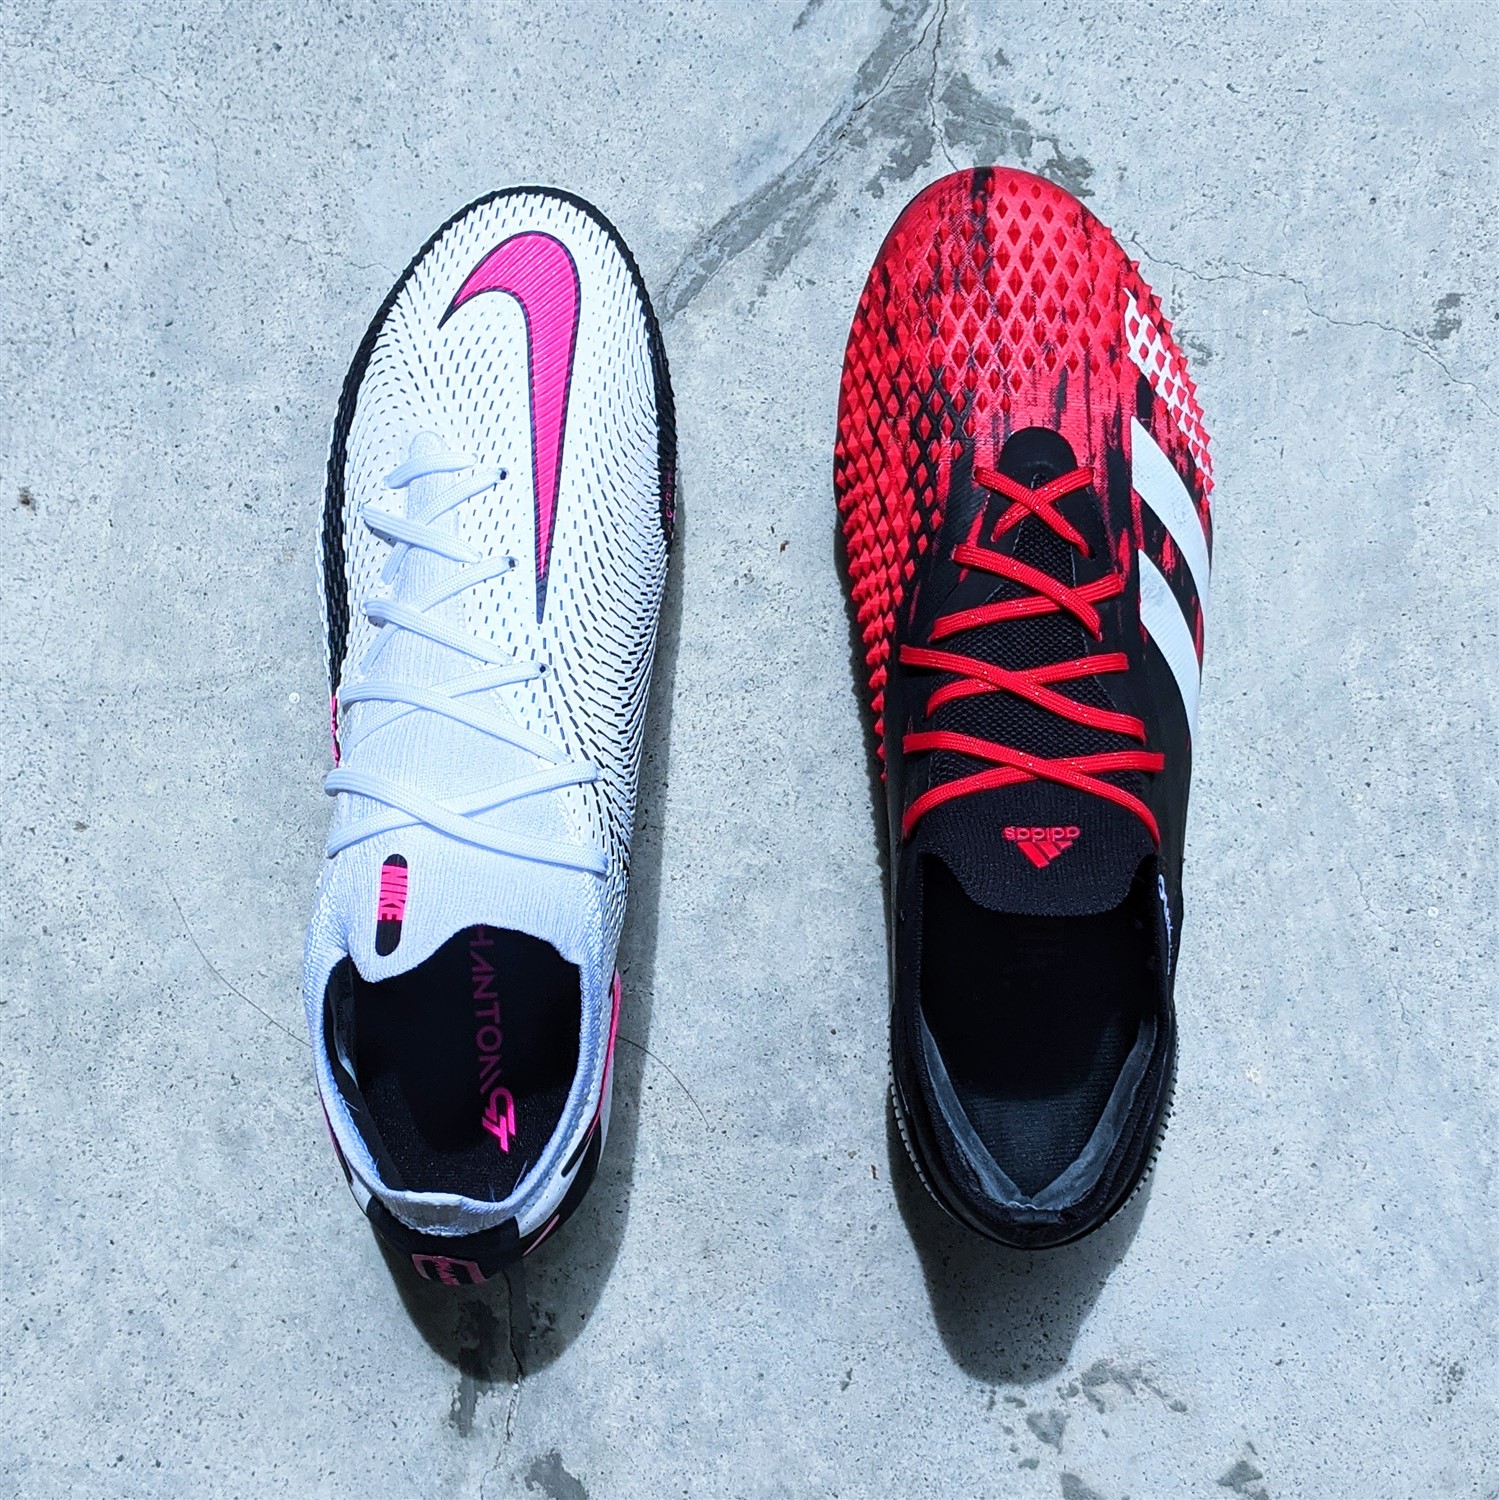 adidas vs nike football shoes